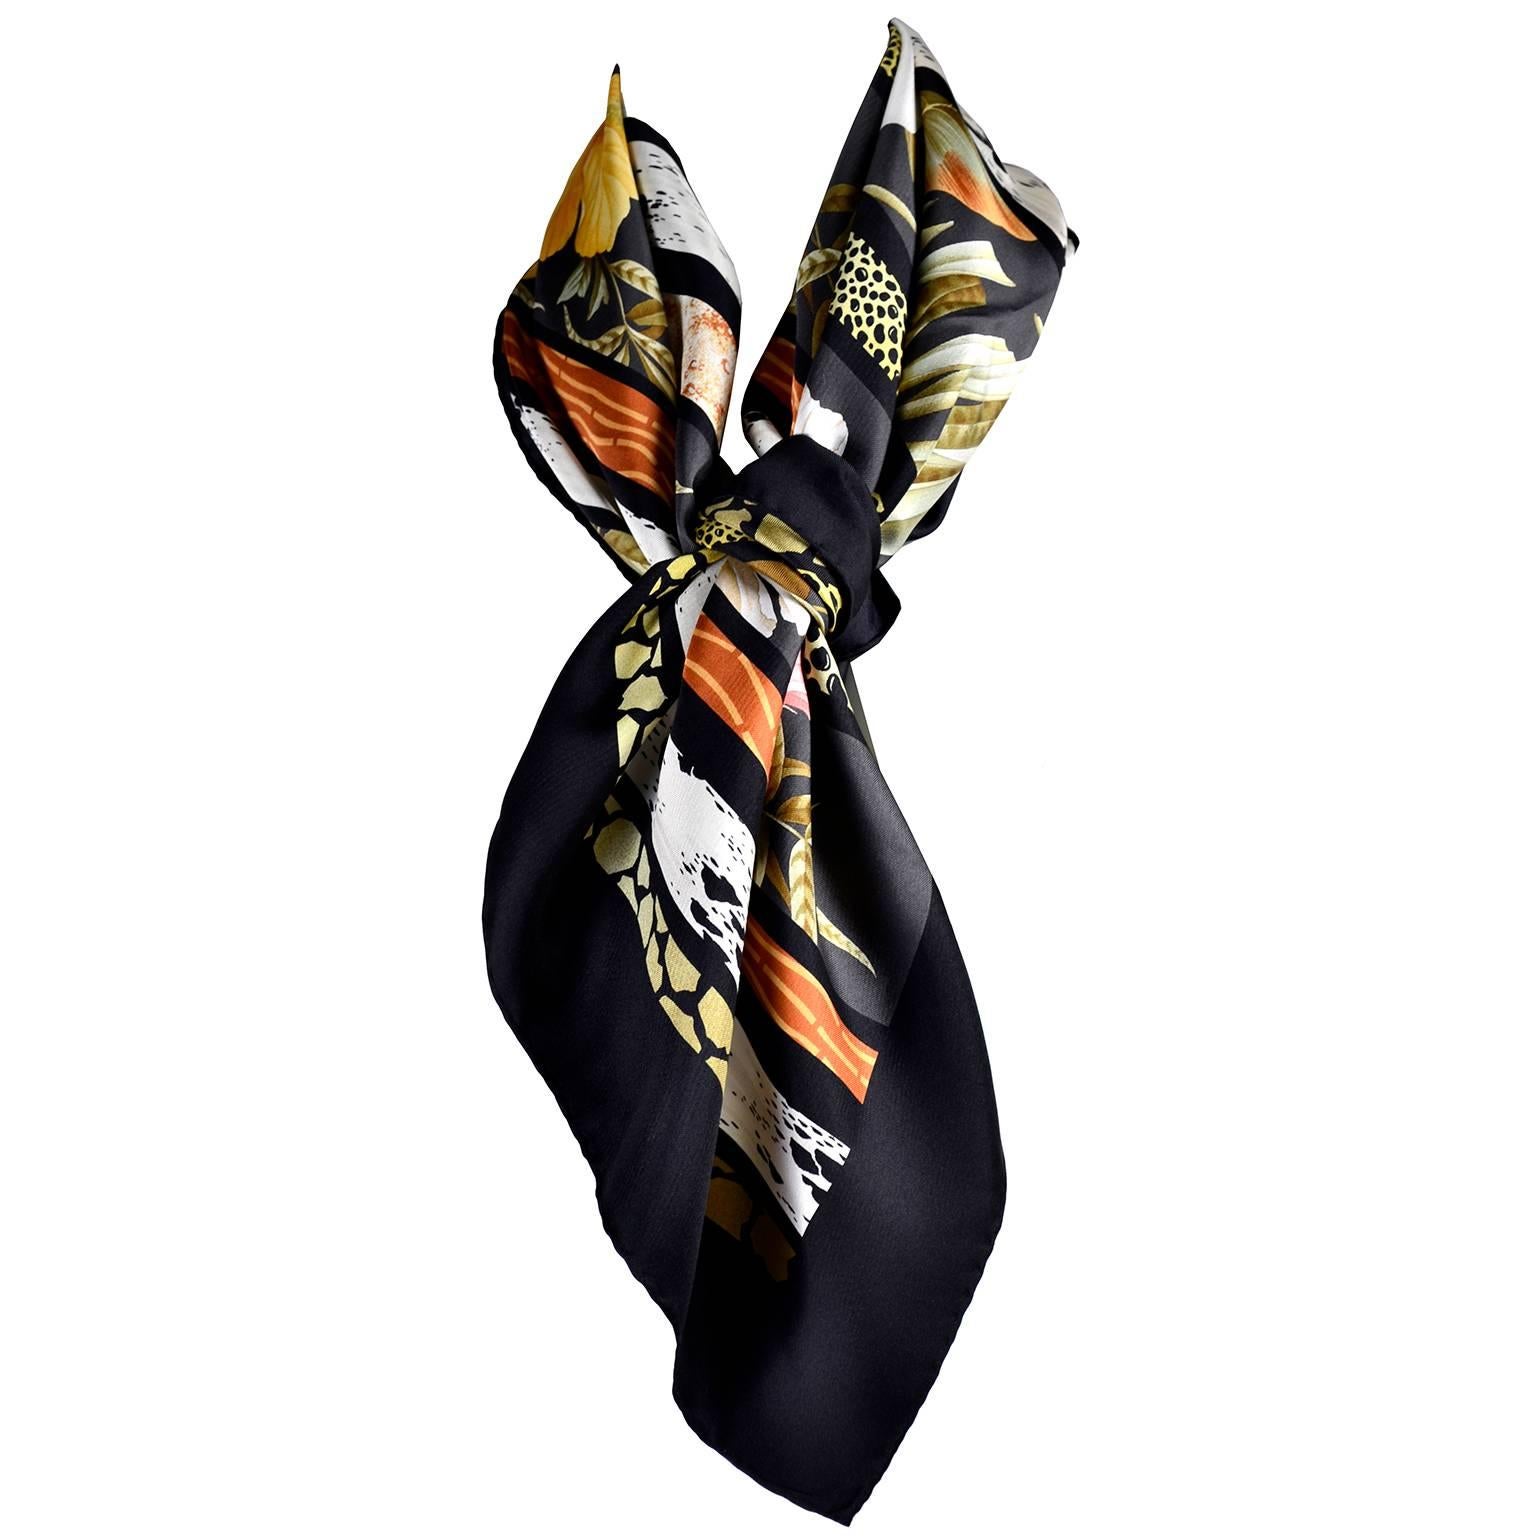 Il s'agit d'un magnifique foulard vintage en soie de Salvatore Ferragamo, de couleur noire avec des bandes d'imprimés animaliers et des fleurs d'hibiscus jaunes et roses, des lys de calla et des feuilles vertes.  Cette magnifique écharpe vintage en